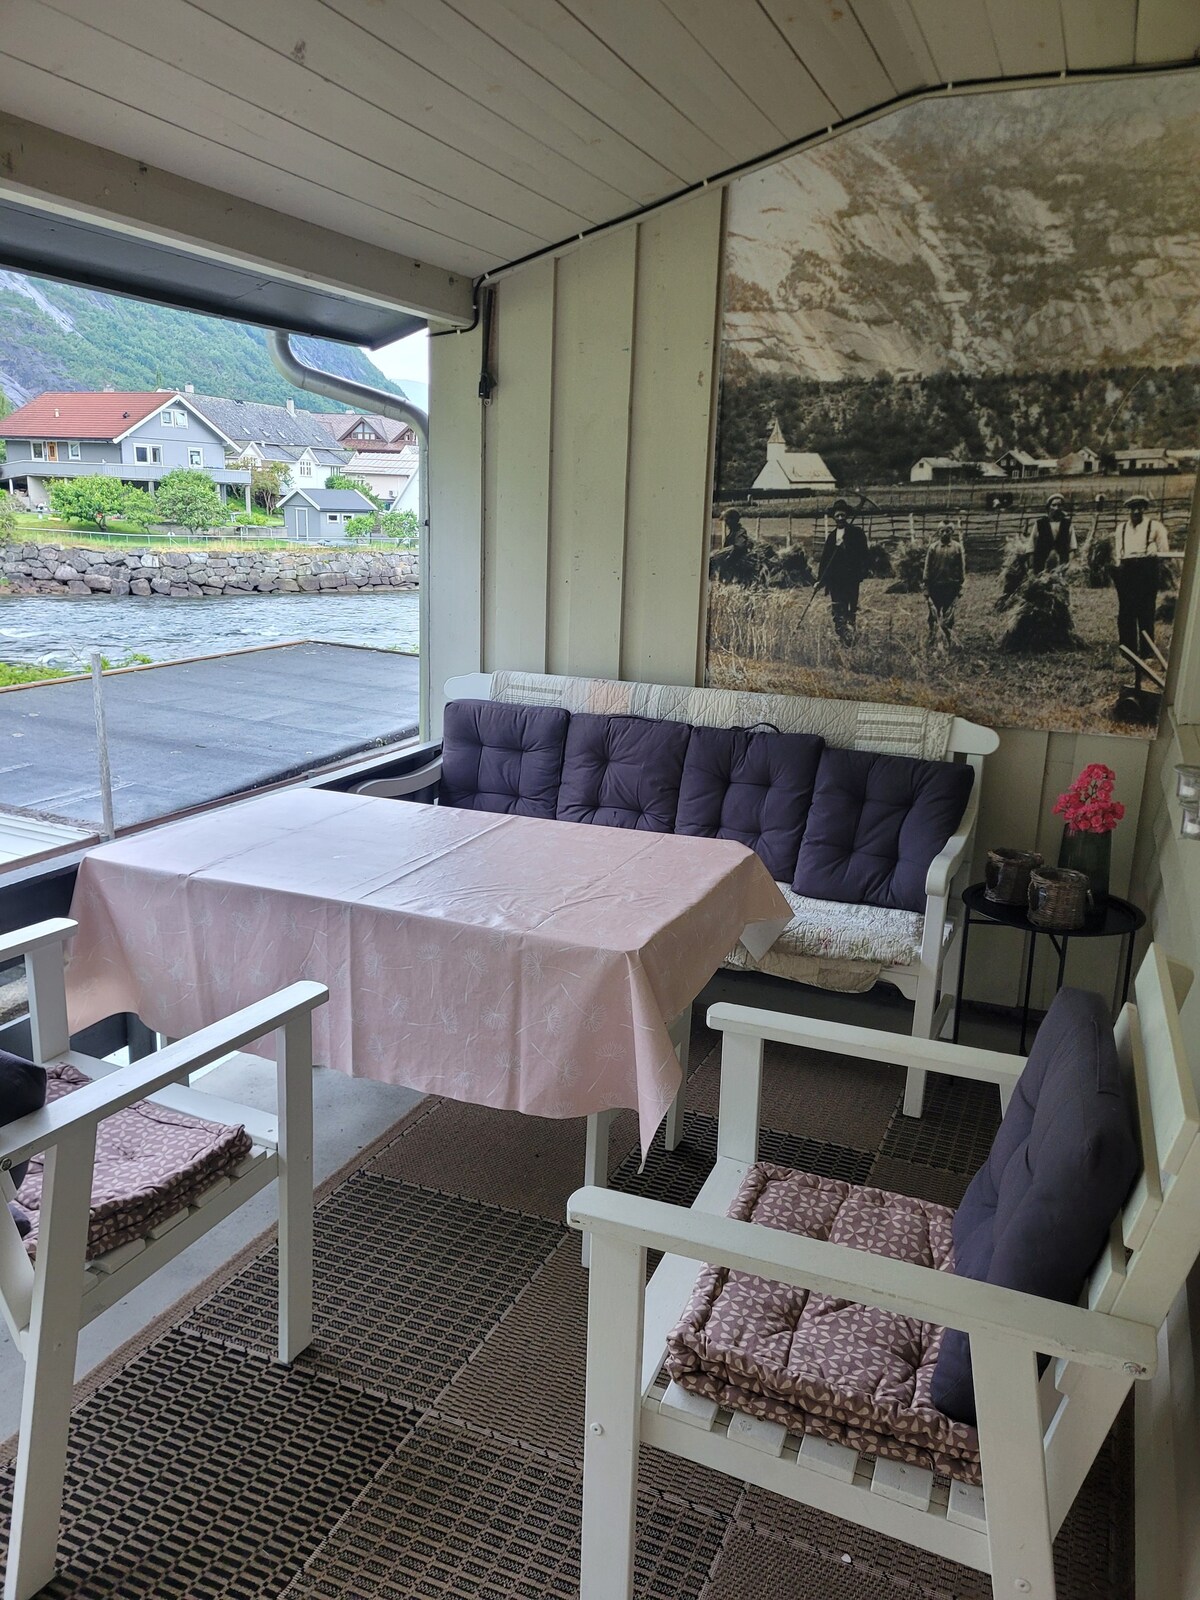 House in Eidfjord centre near the Hardangerfjord